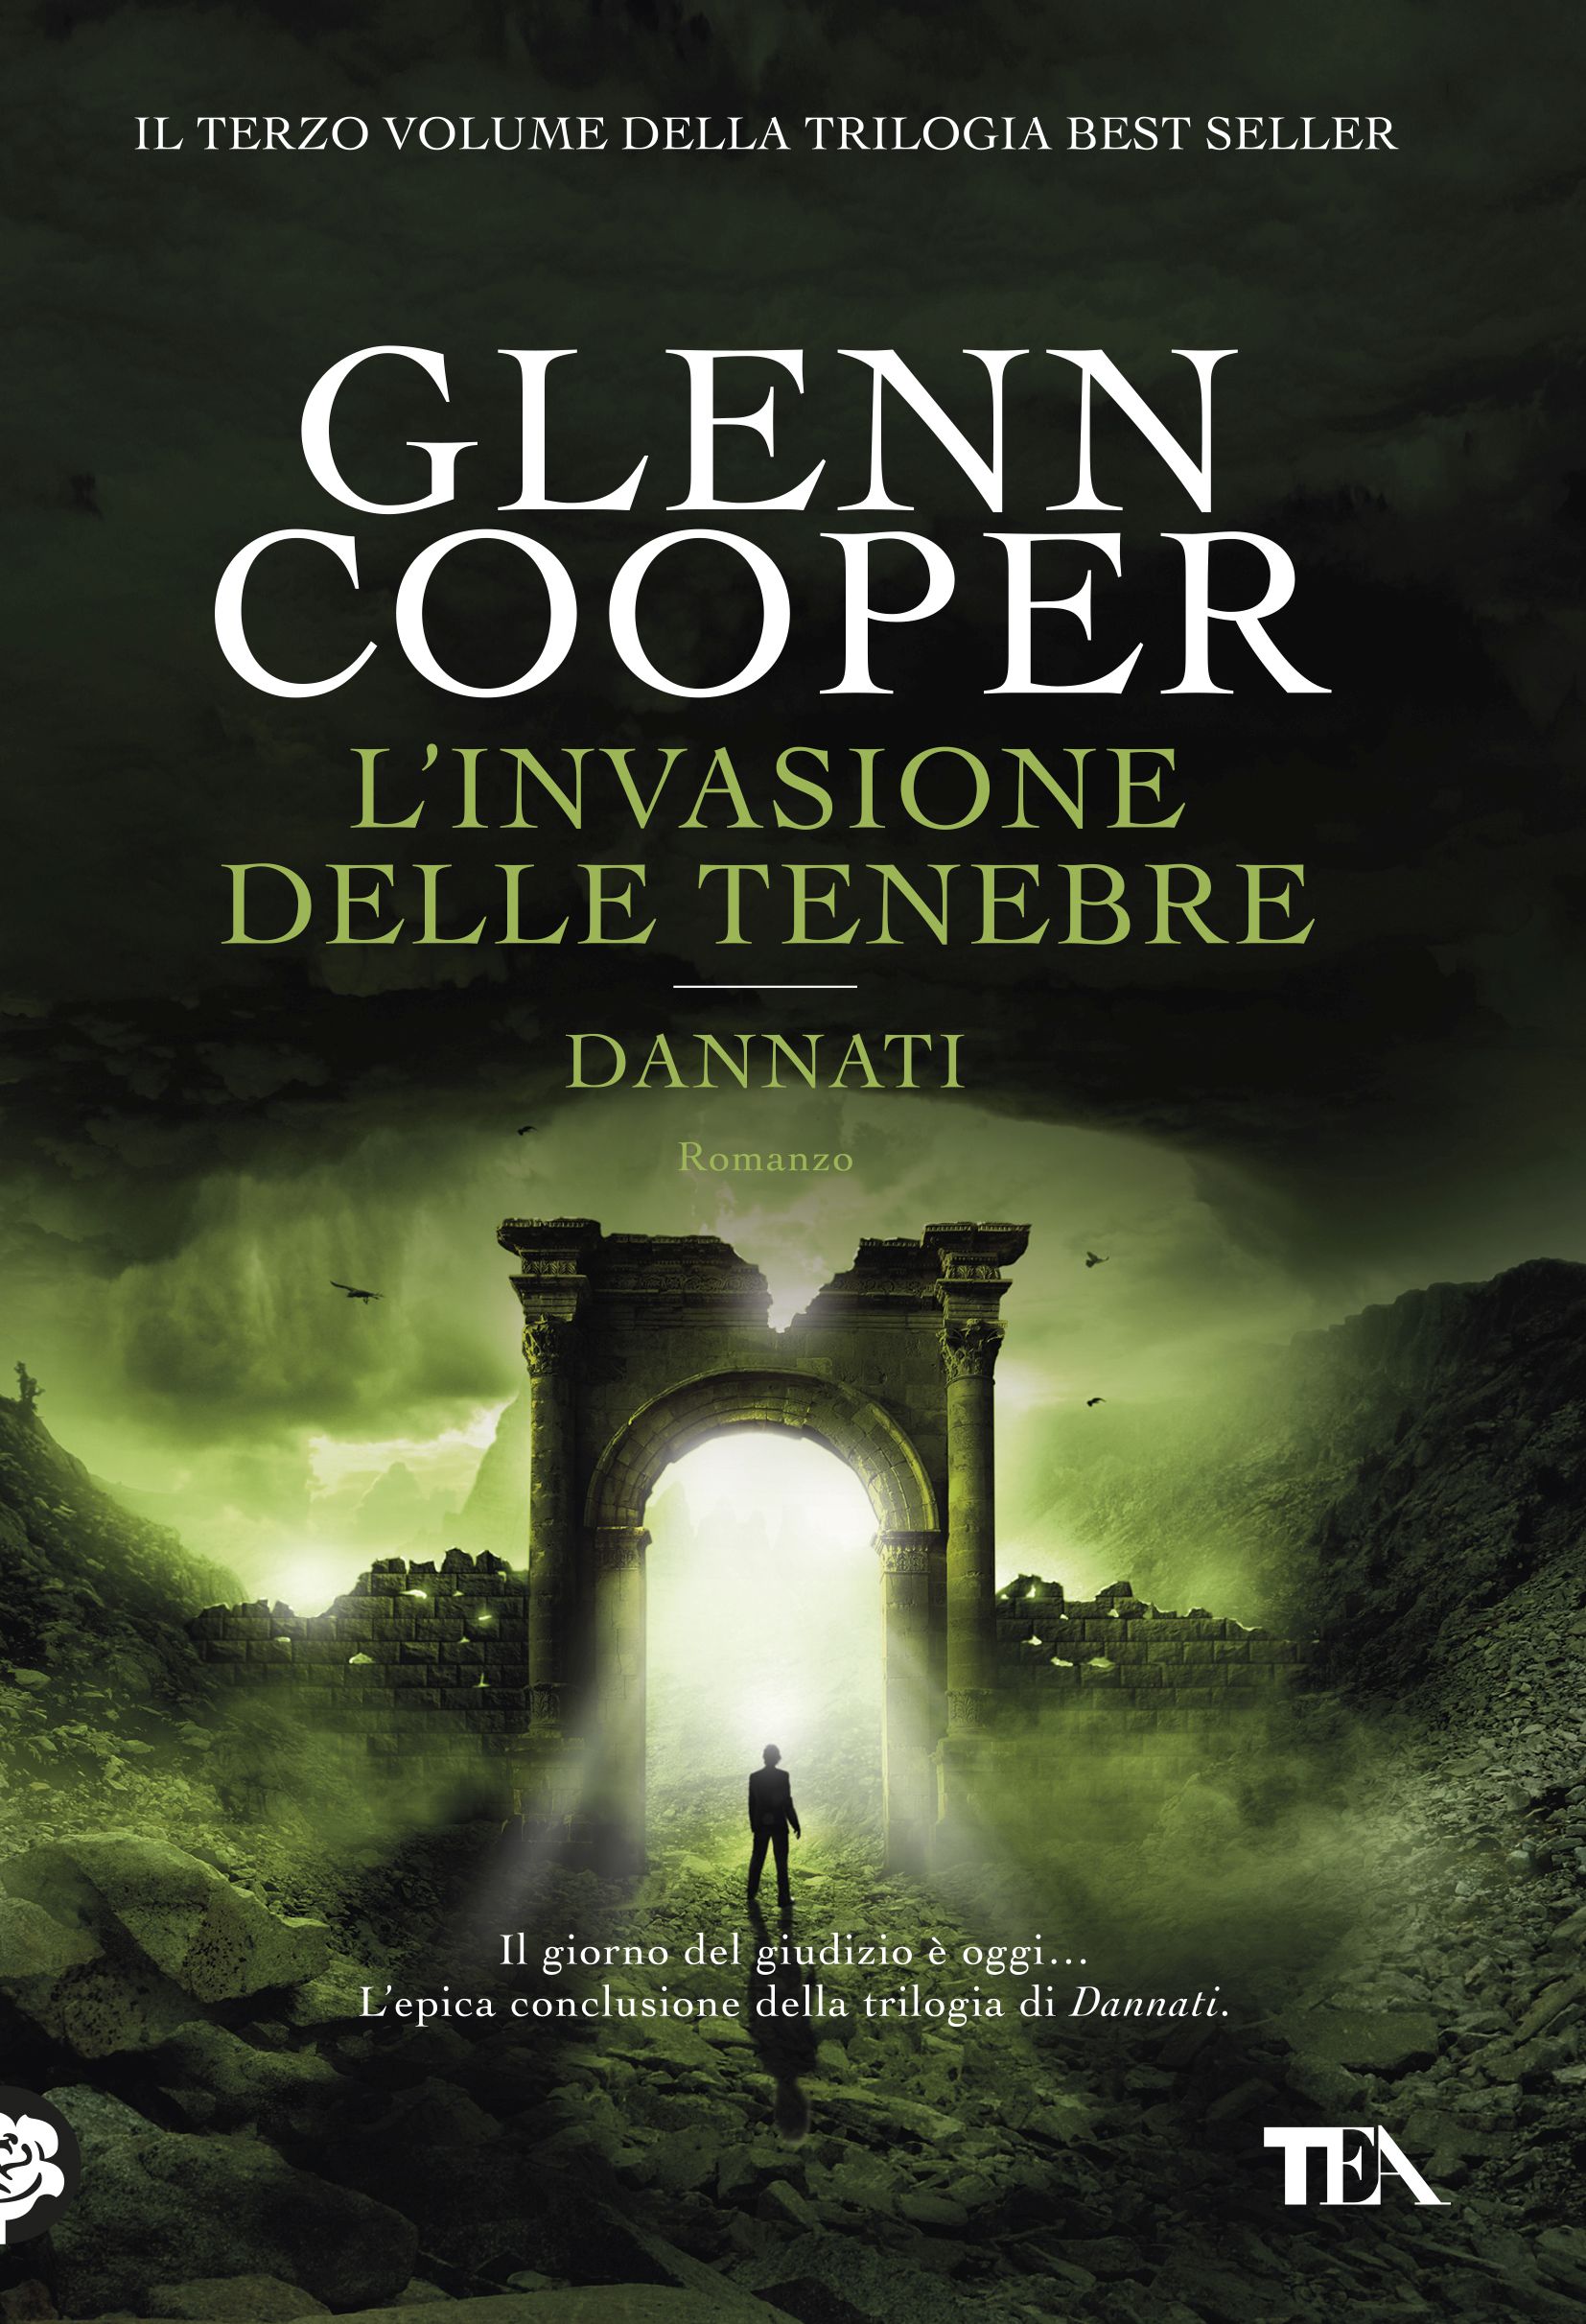 https://www.tealibri.it/libri/glenn-cooper-linvasione-delle-tenebre-9788850245185/image